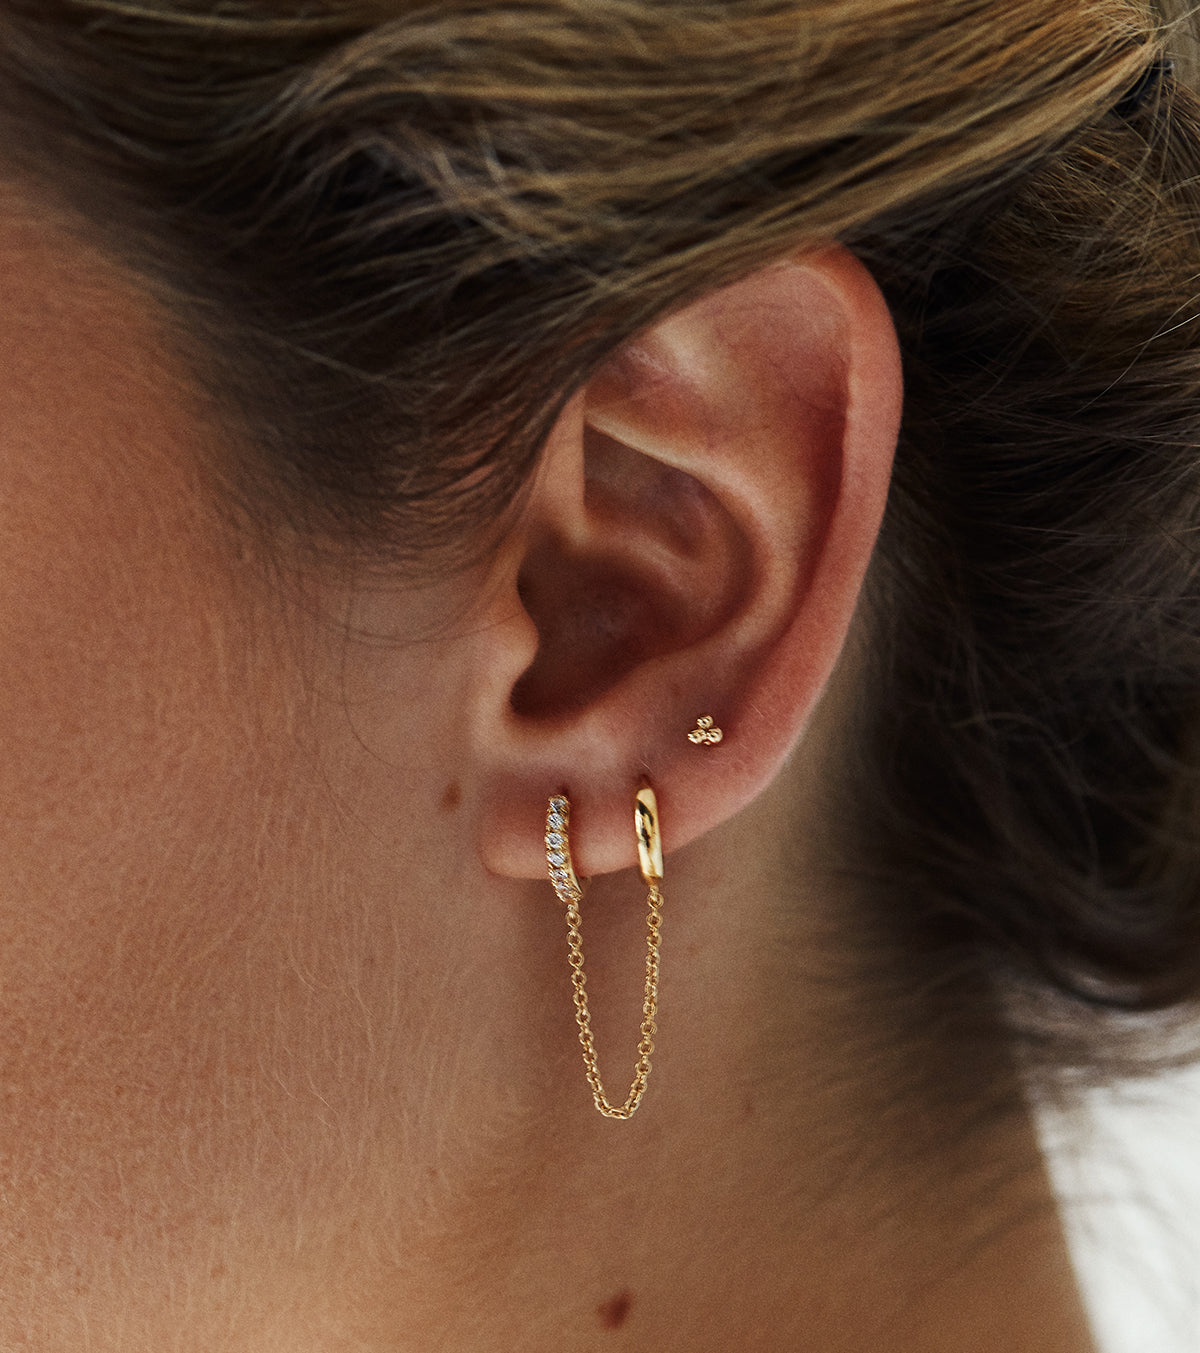 Mao earrings